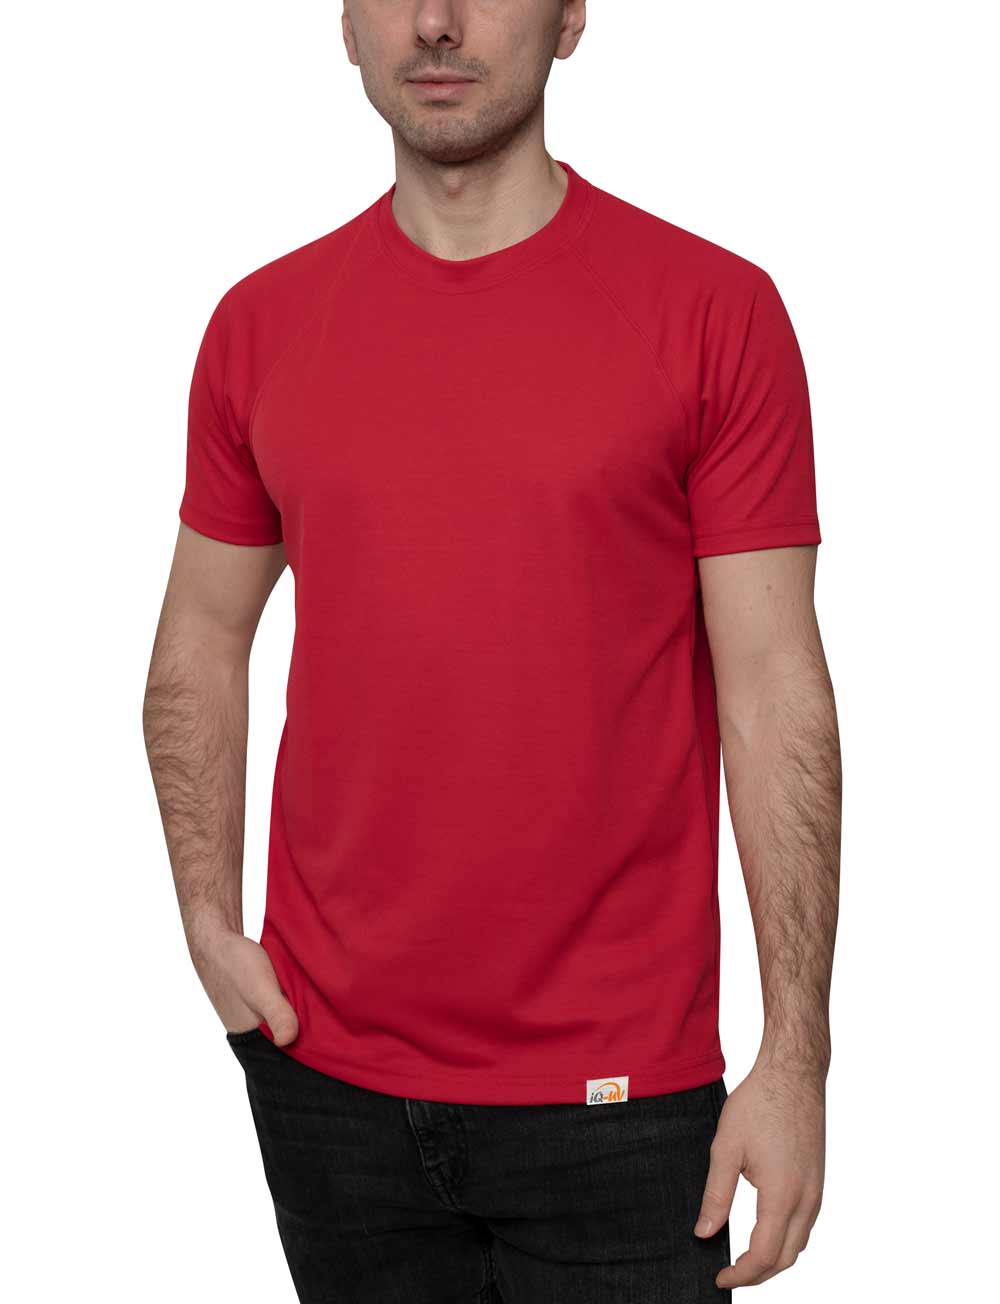 UV T-Shirt für Herren Outdoor Rundhals rot front